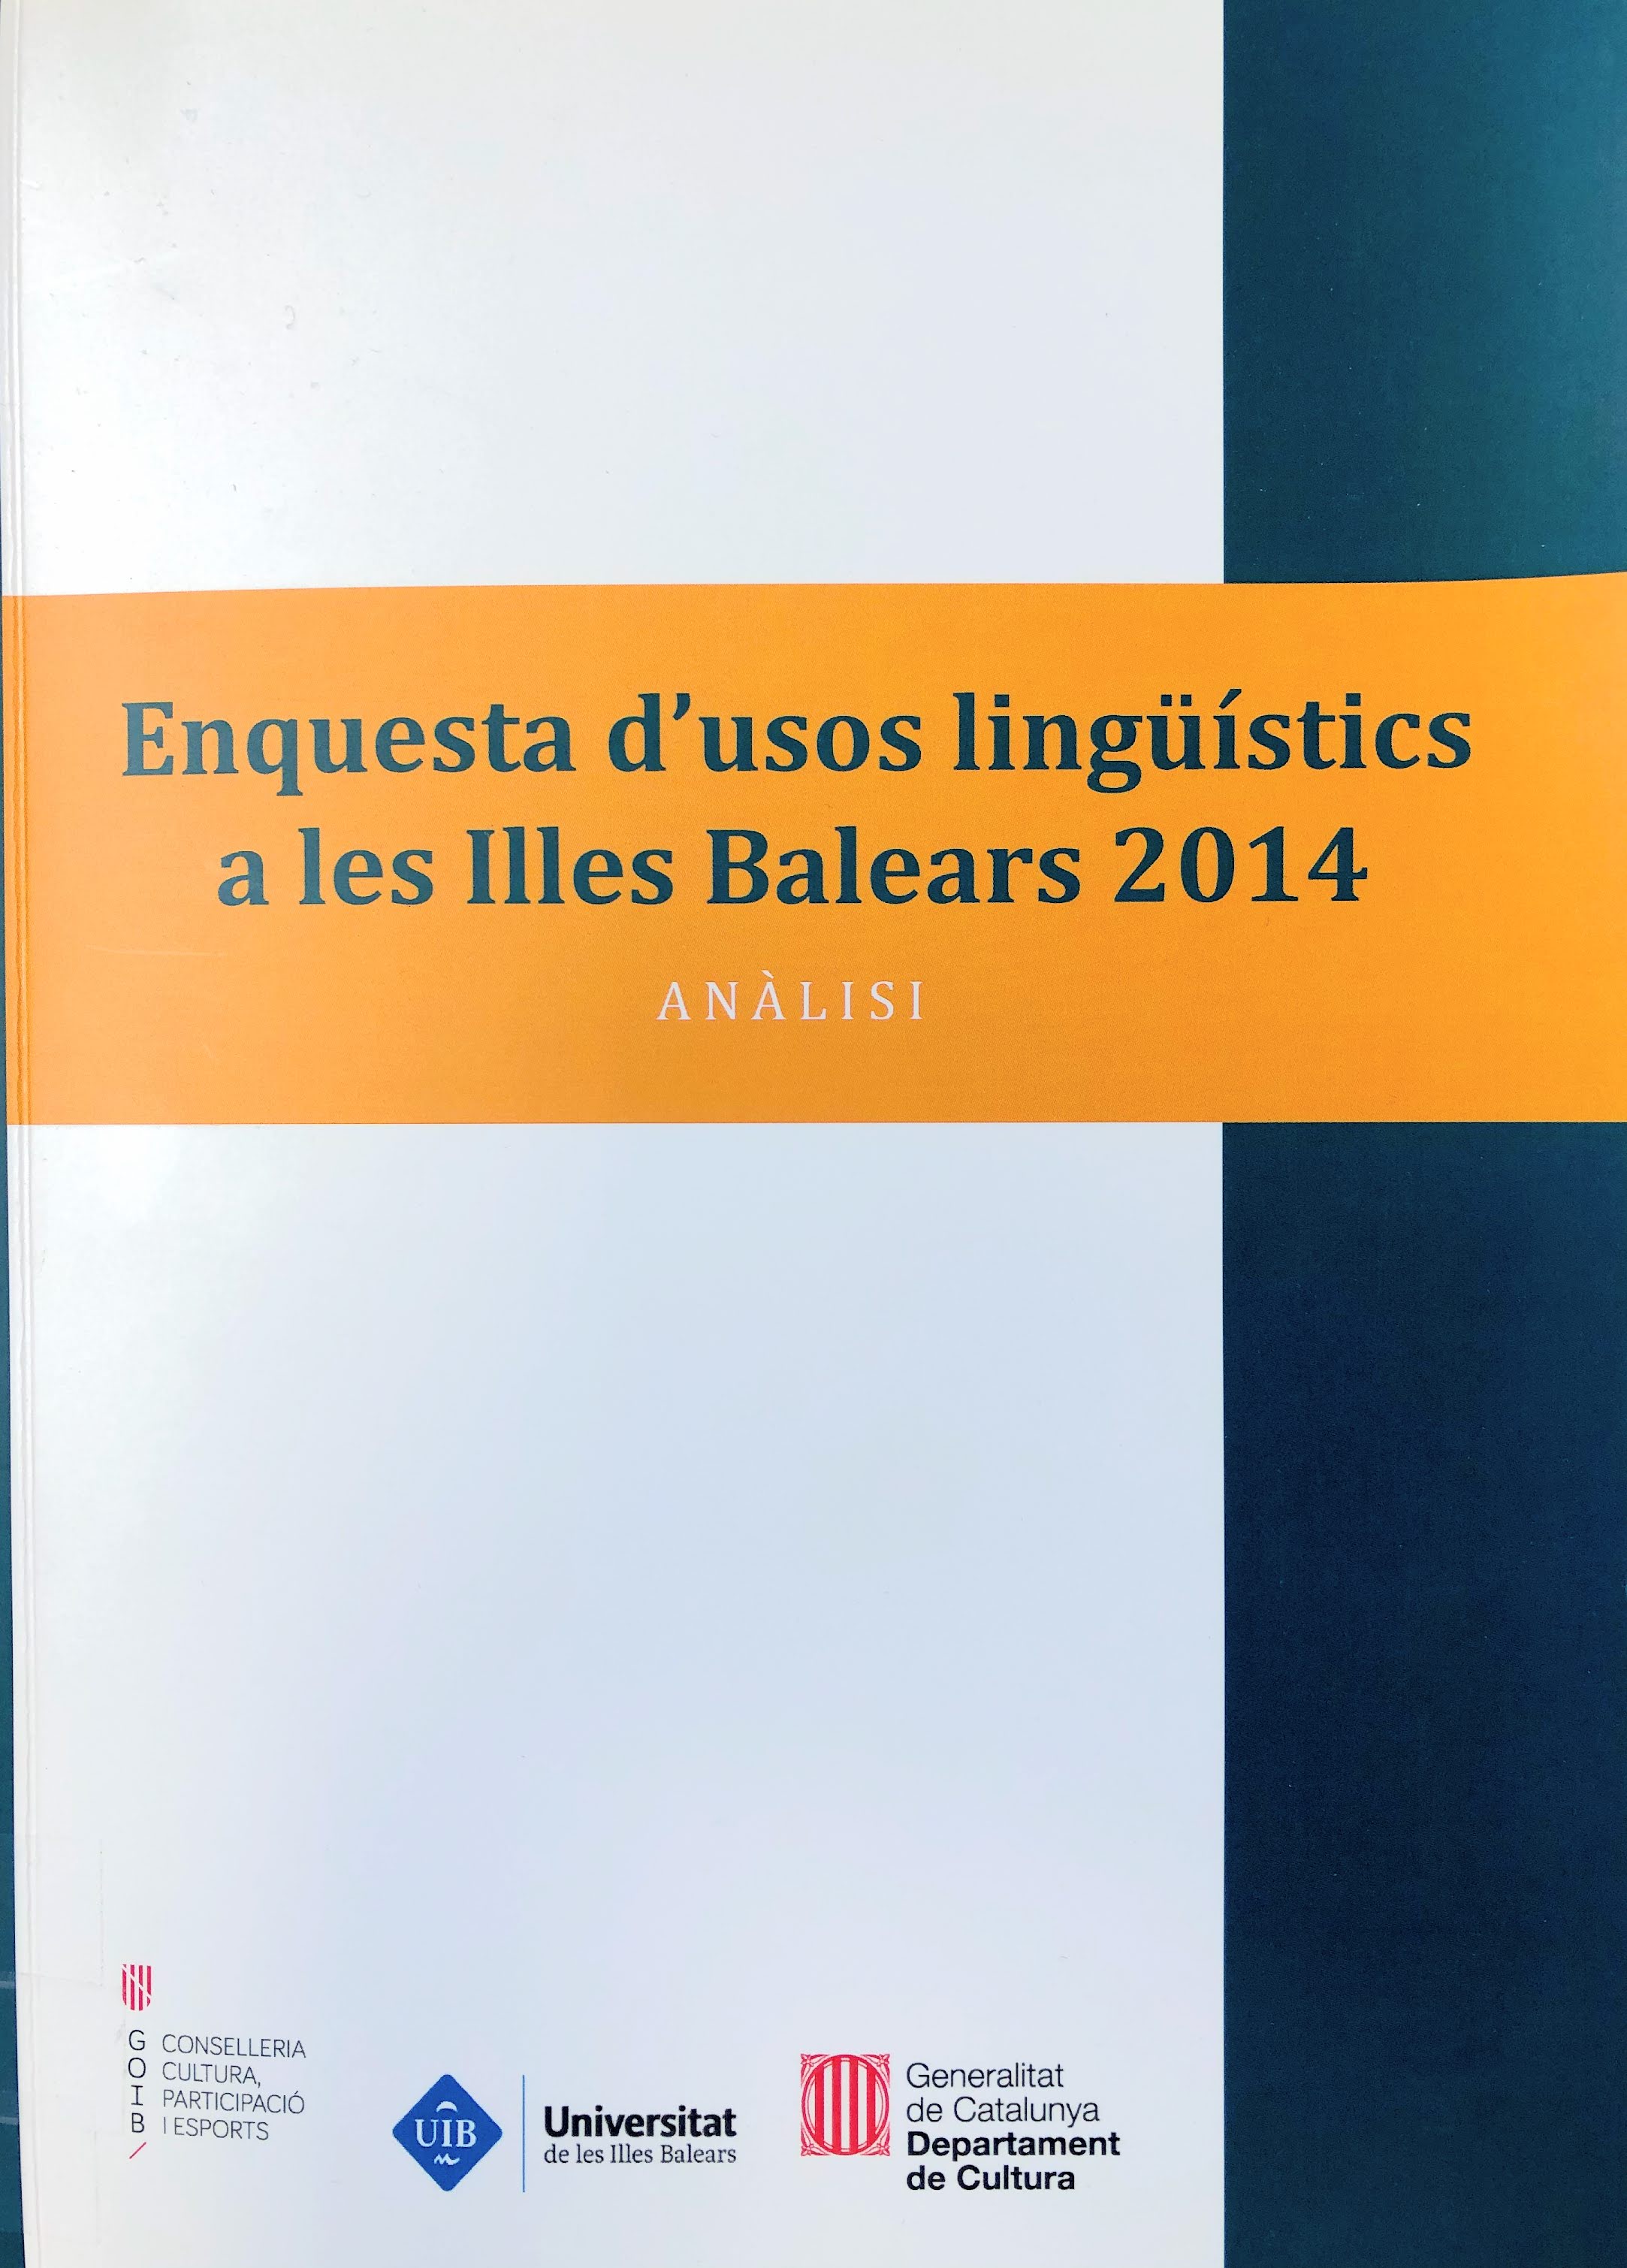 Imagen de portada del libro Enquesta d'usos lingüístics a les Illes Balears 2014